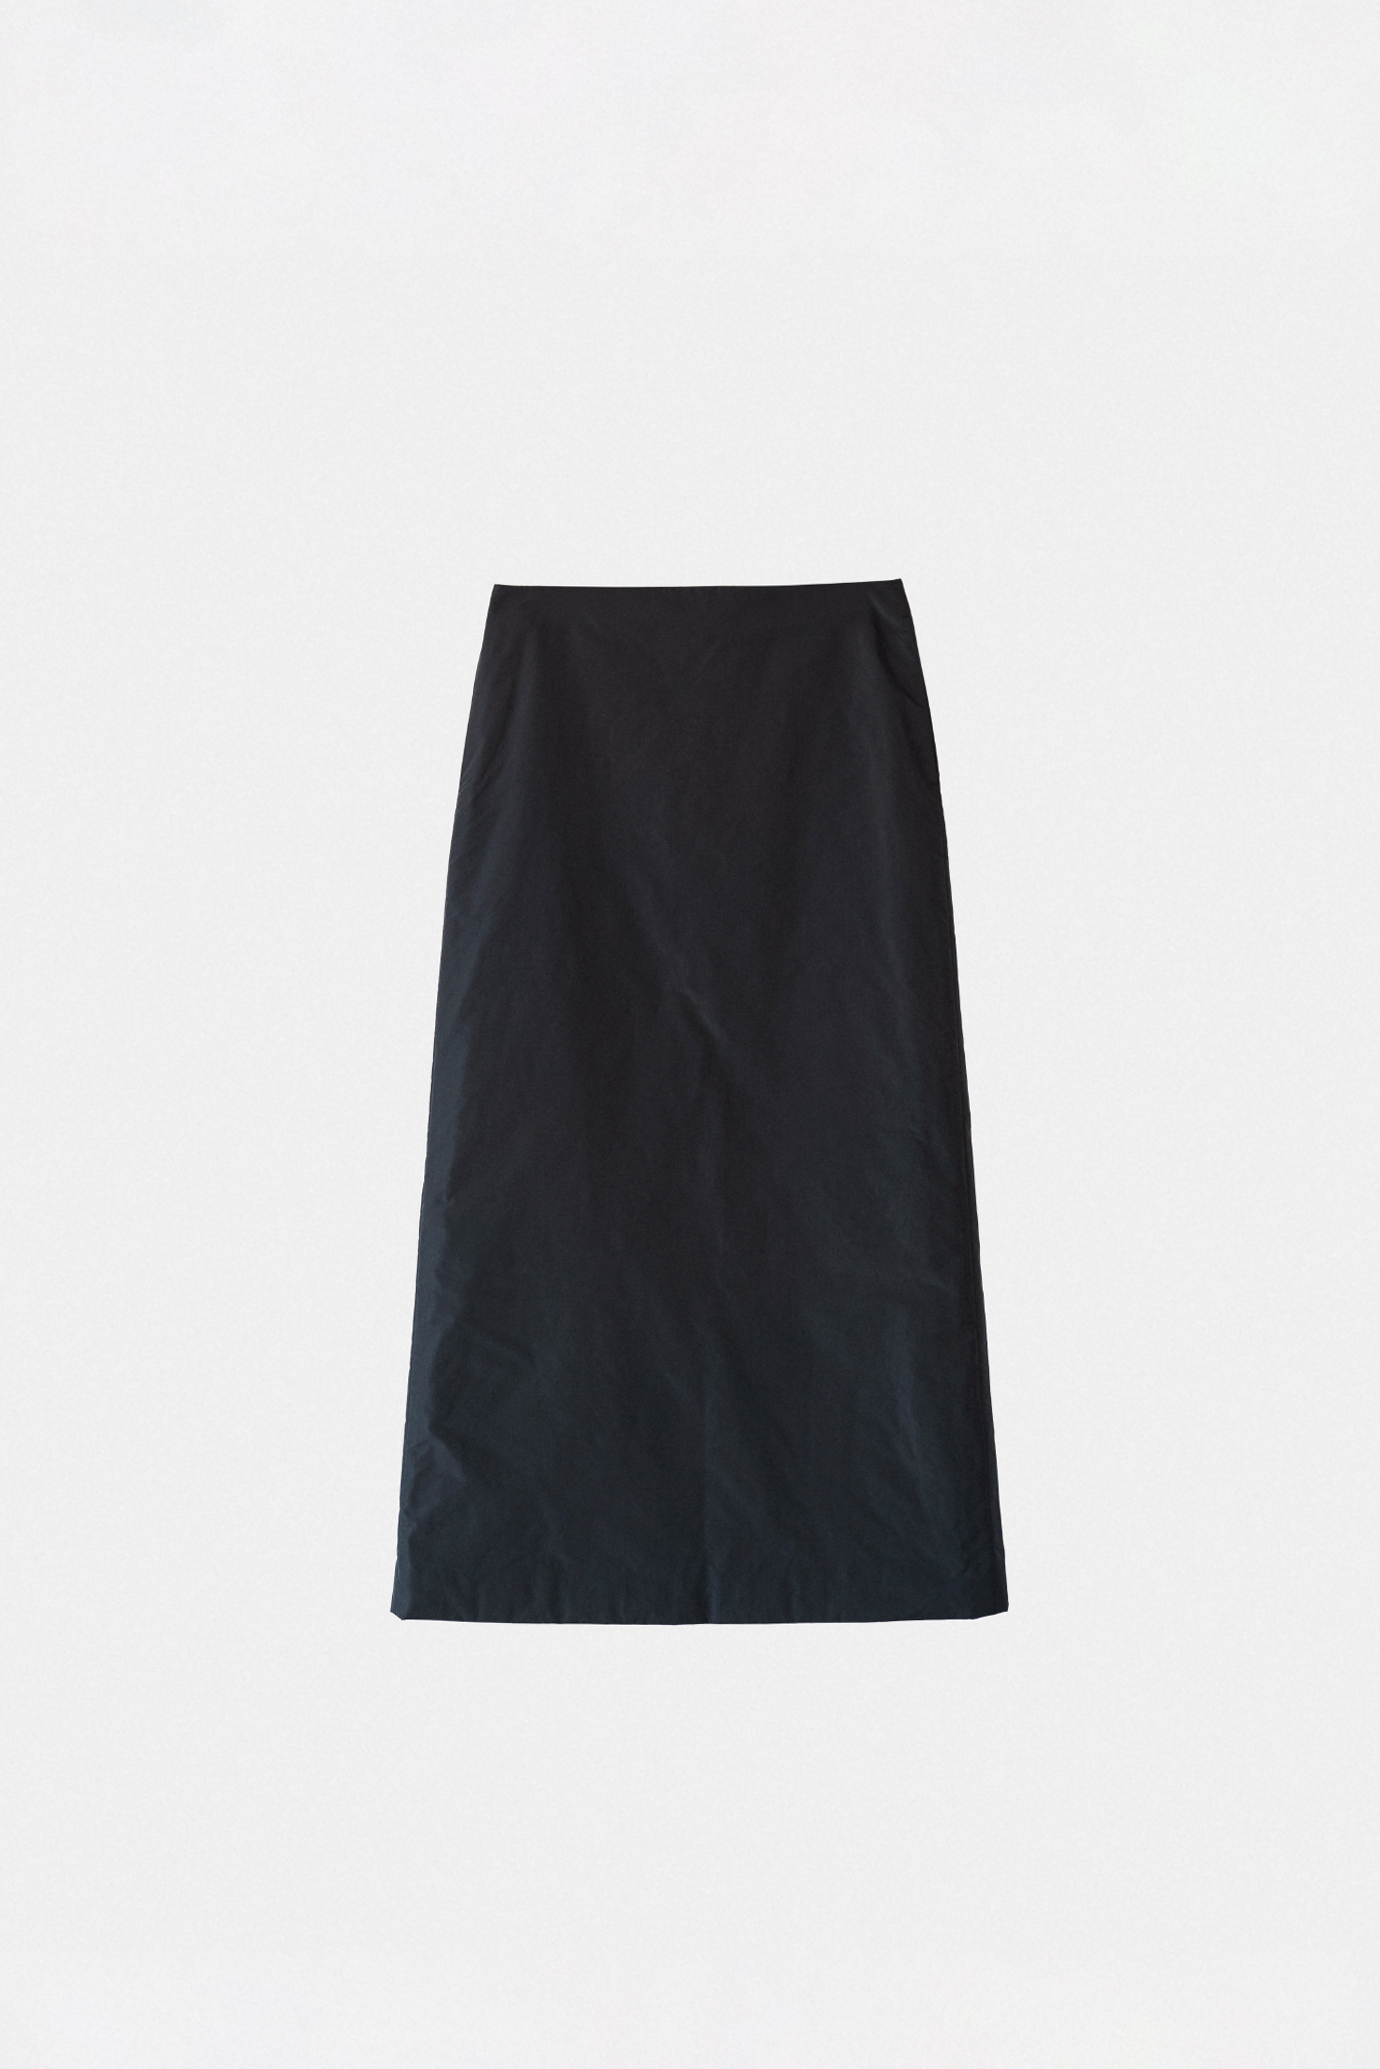 19235_Padded Maxi Skirt